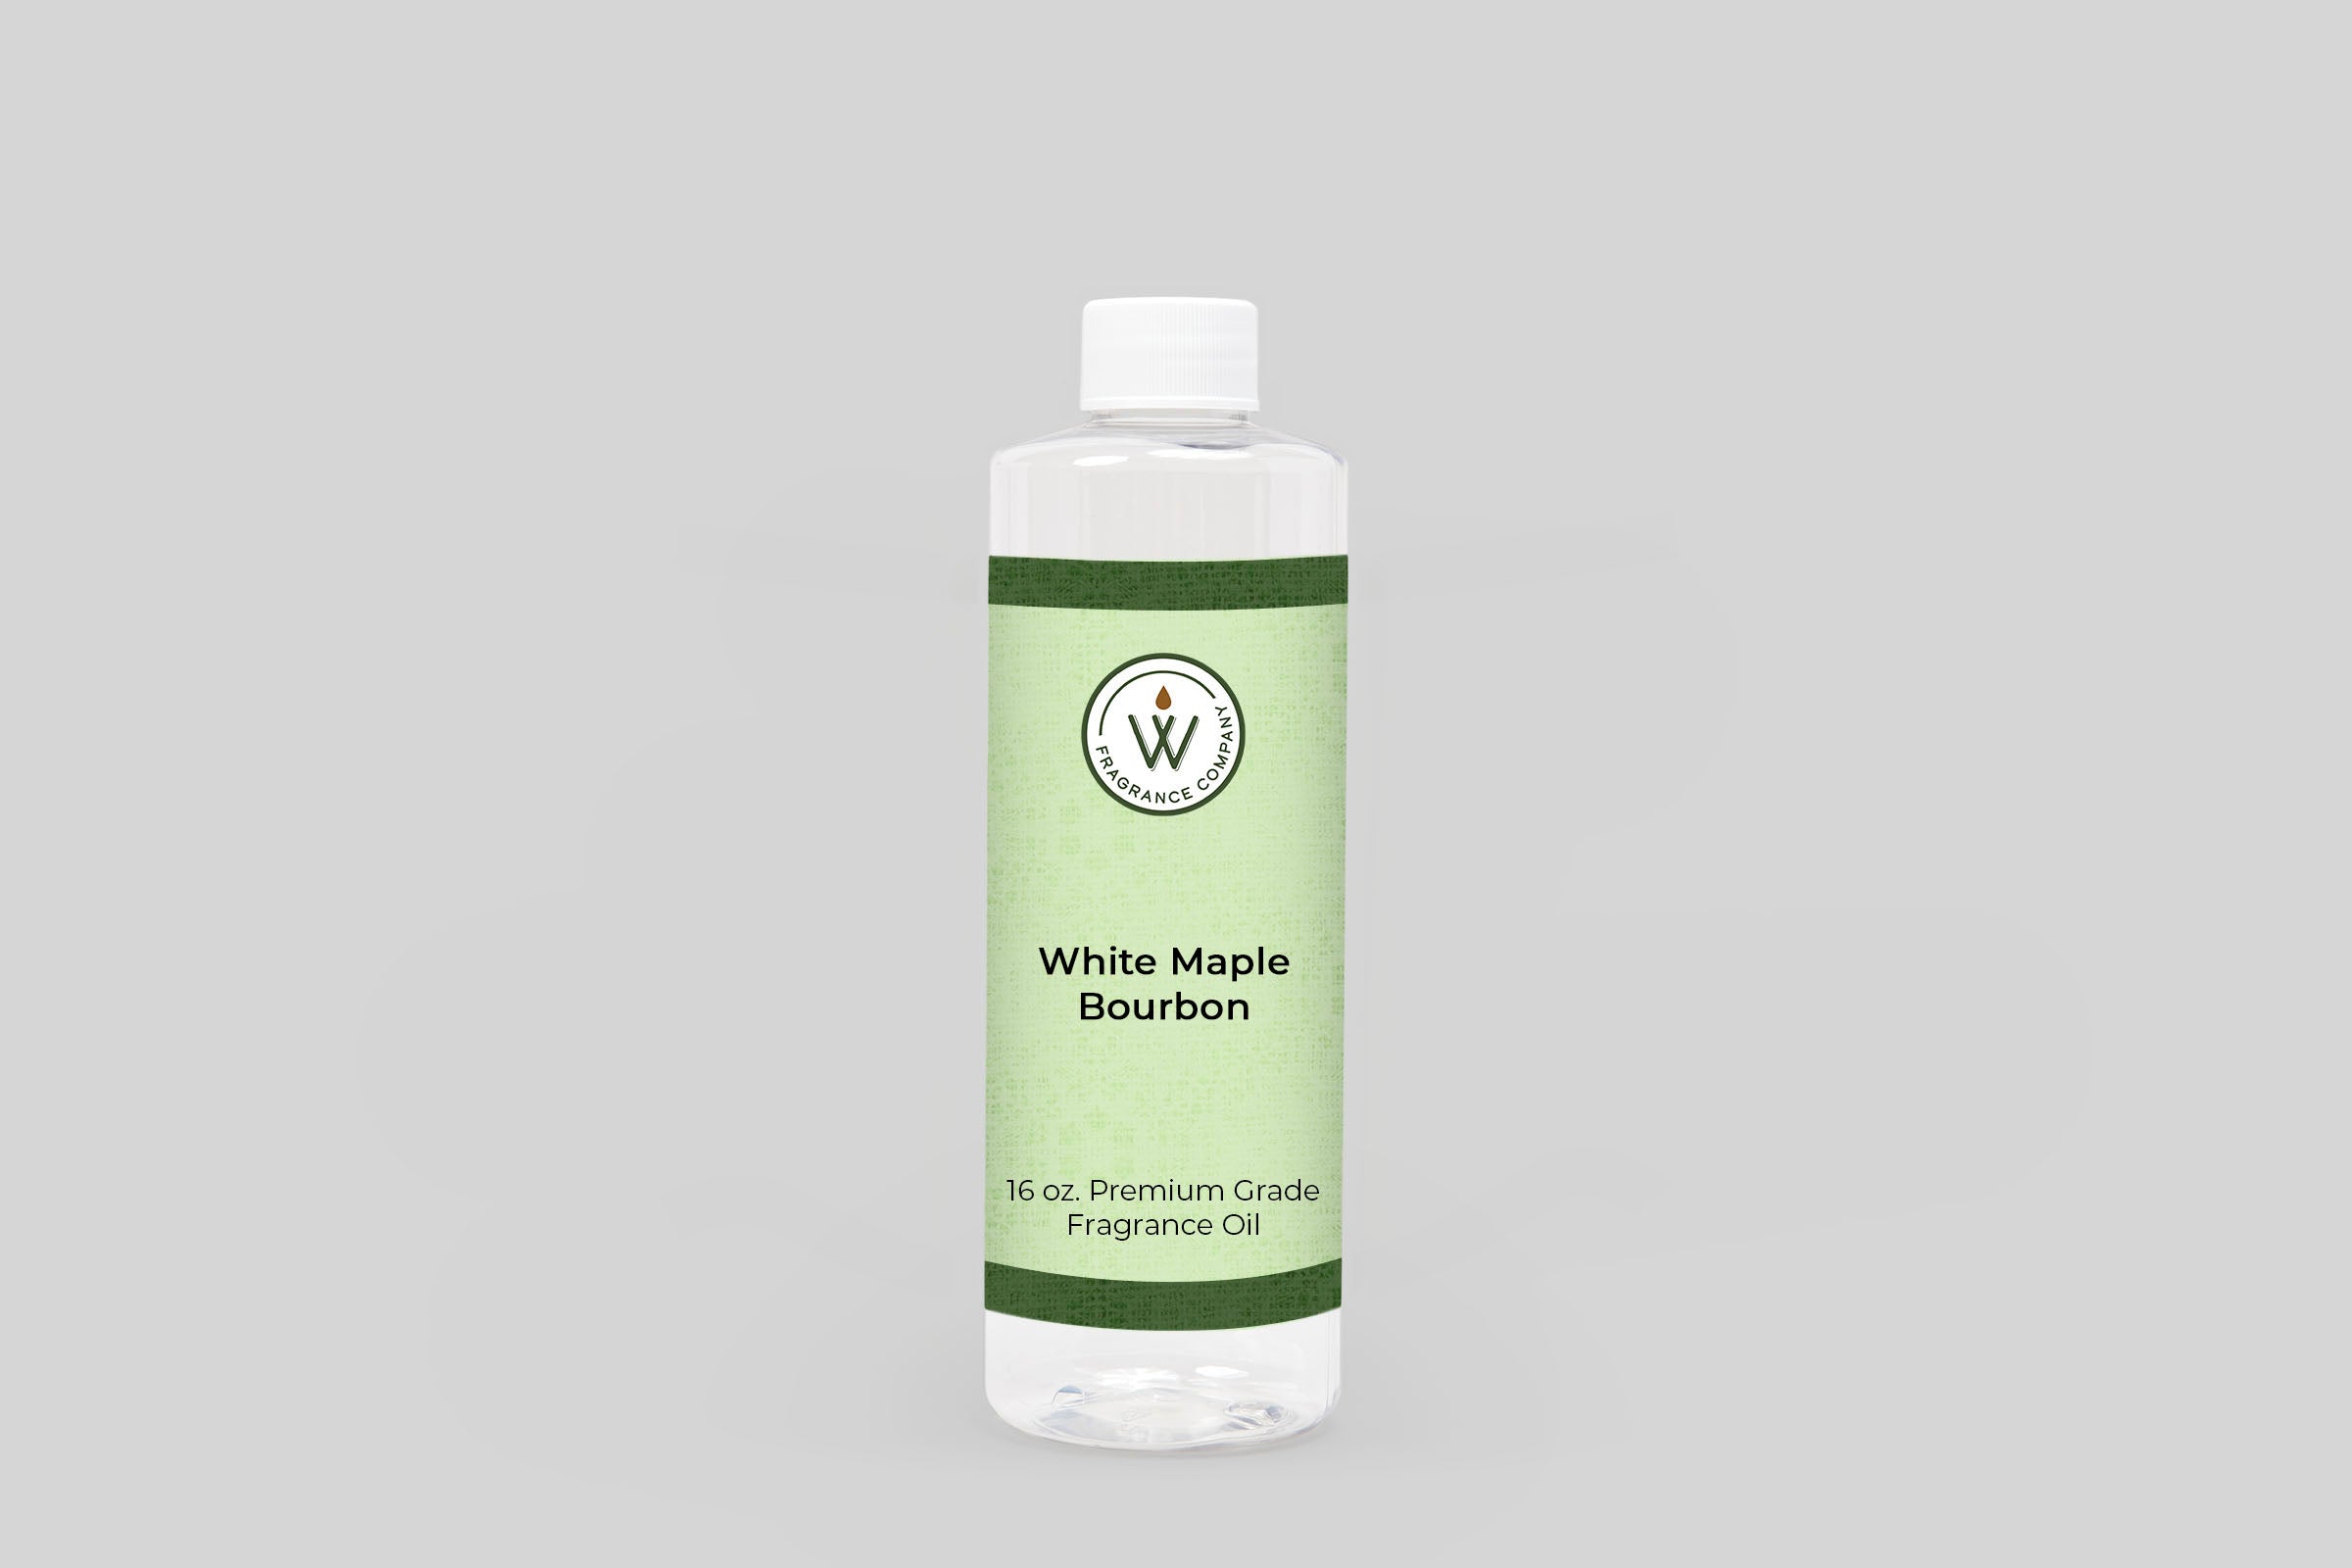 White Maple Bourbon Fragrance Oil